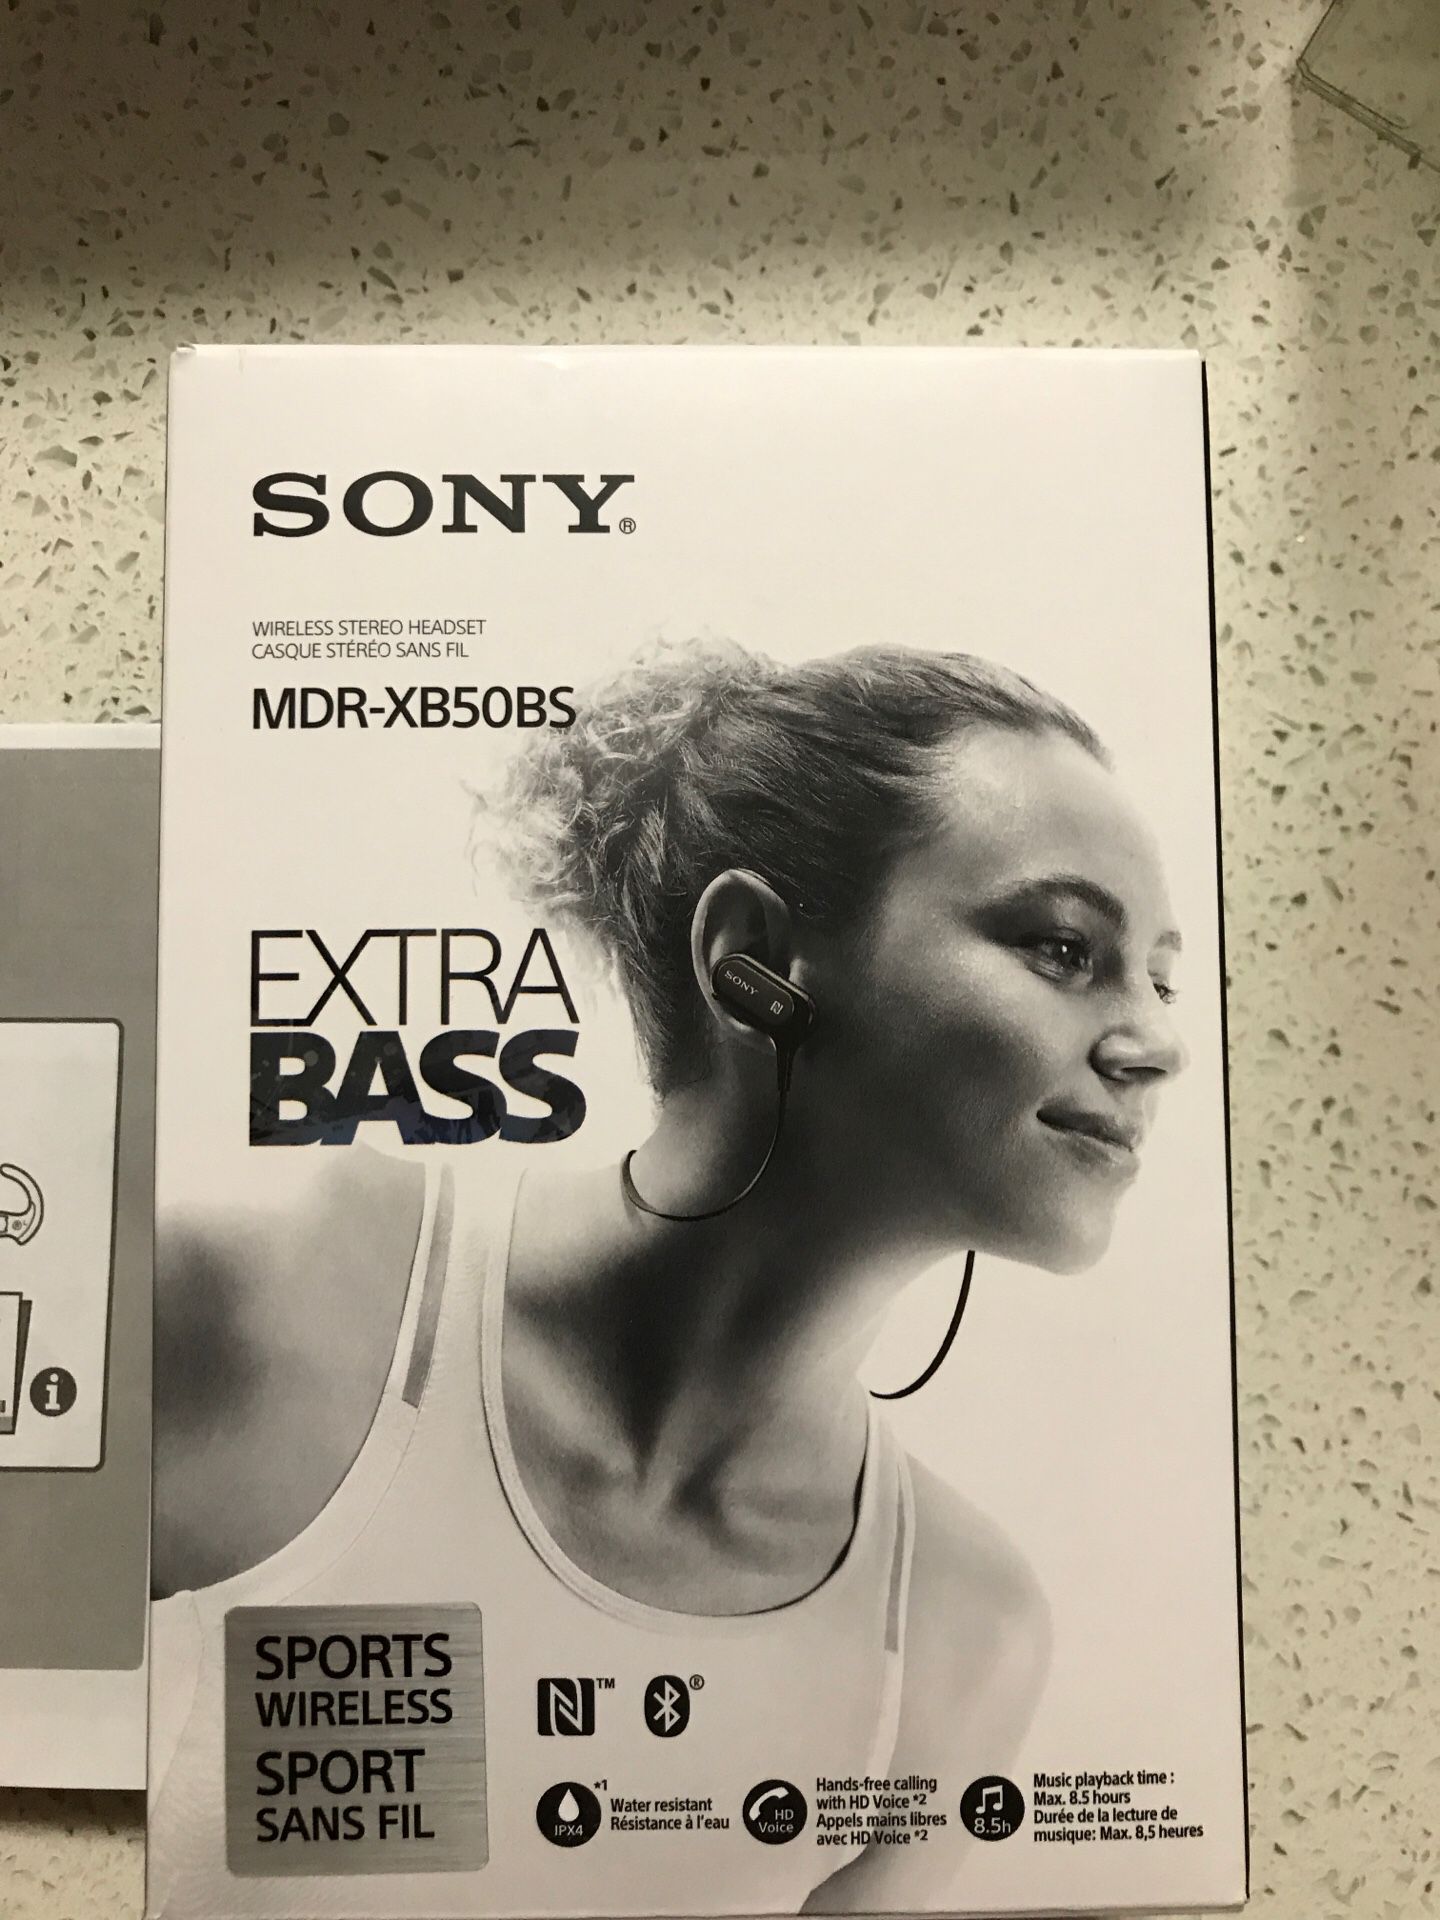 Sony wireless head phones